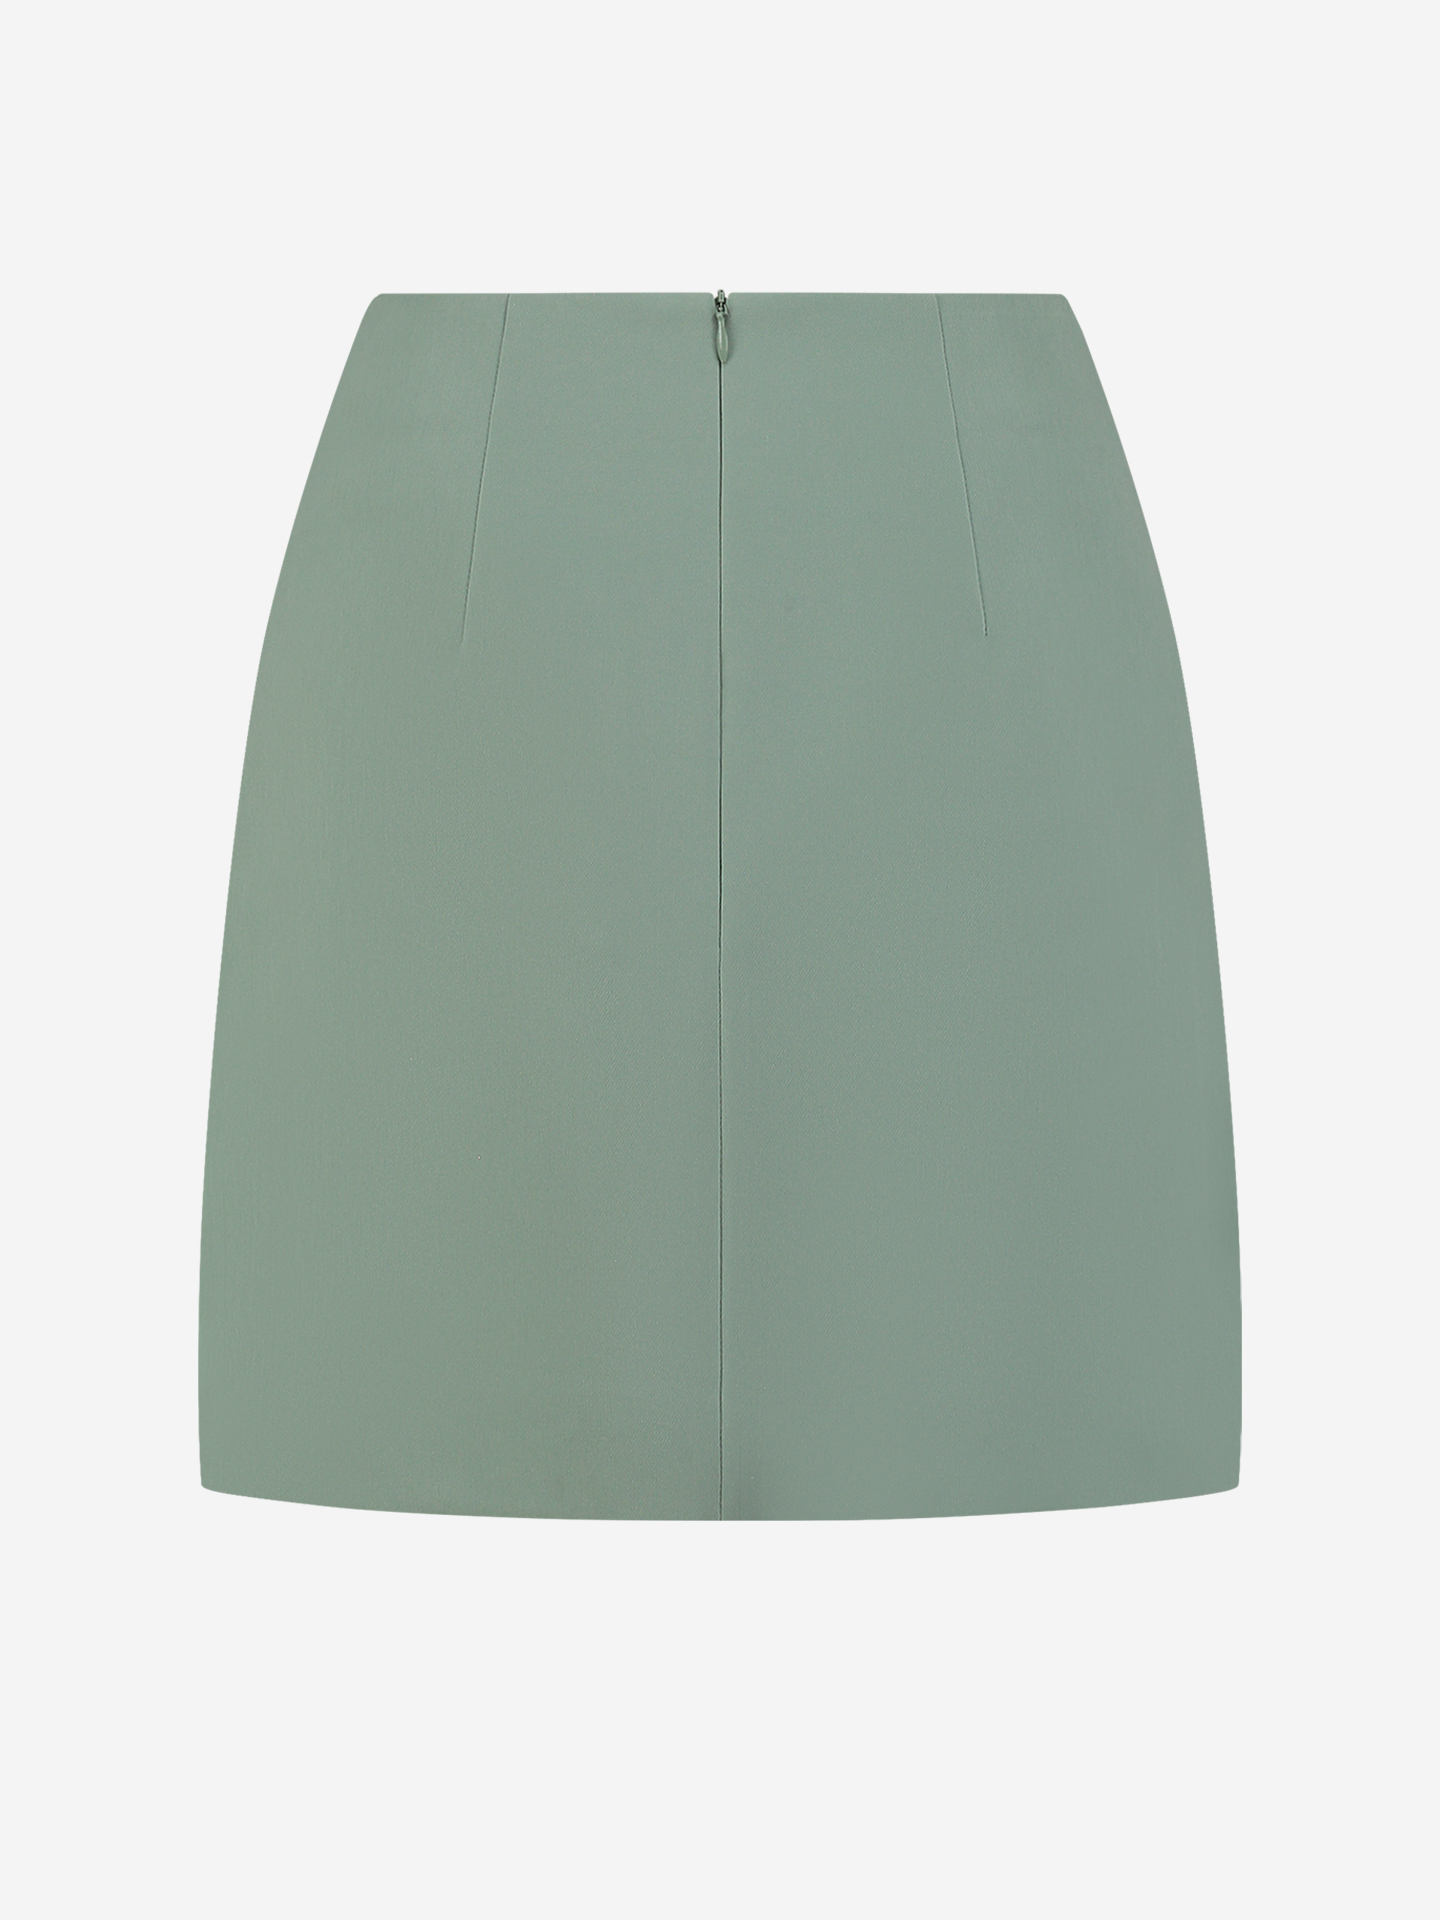 Loise Skirt